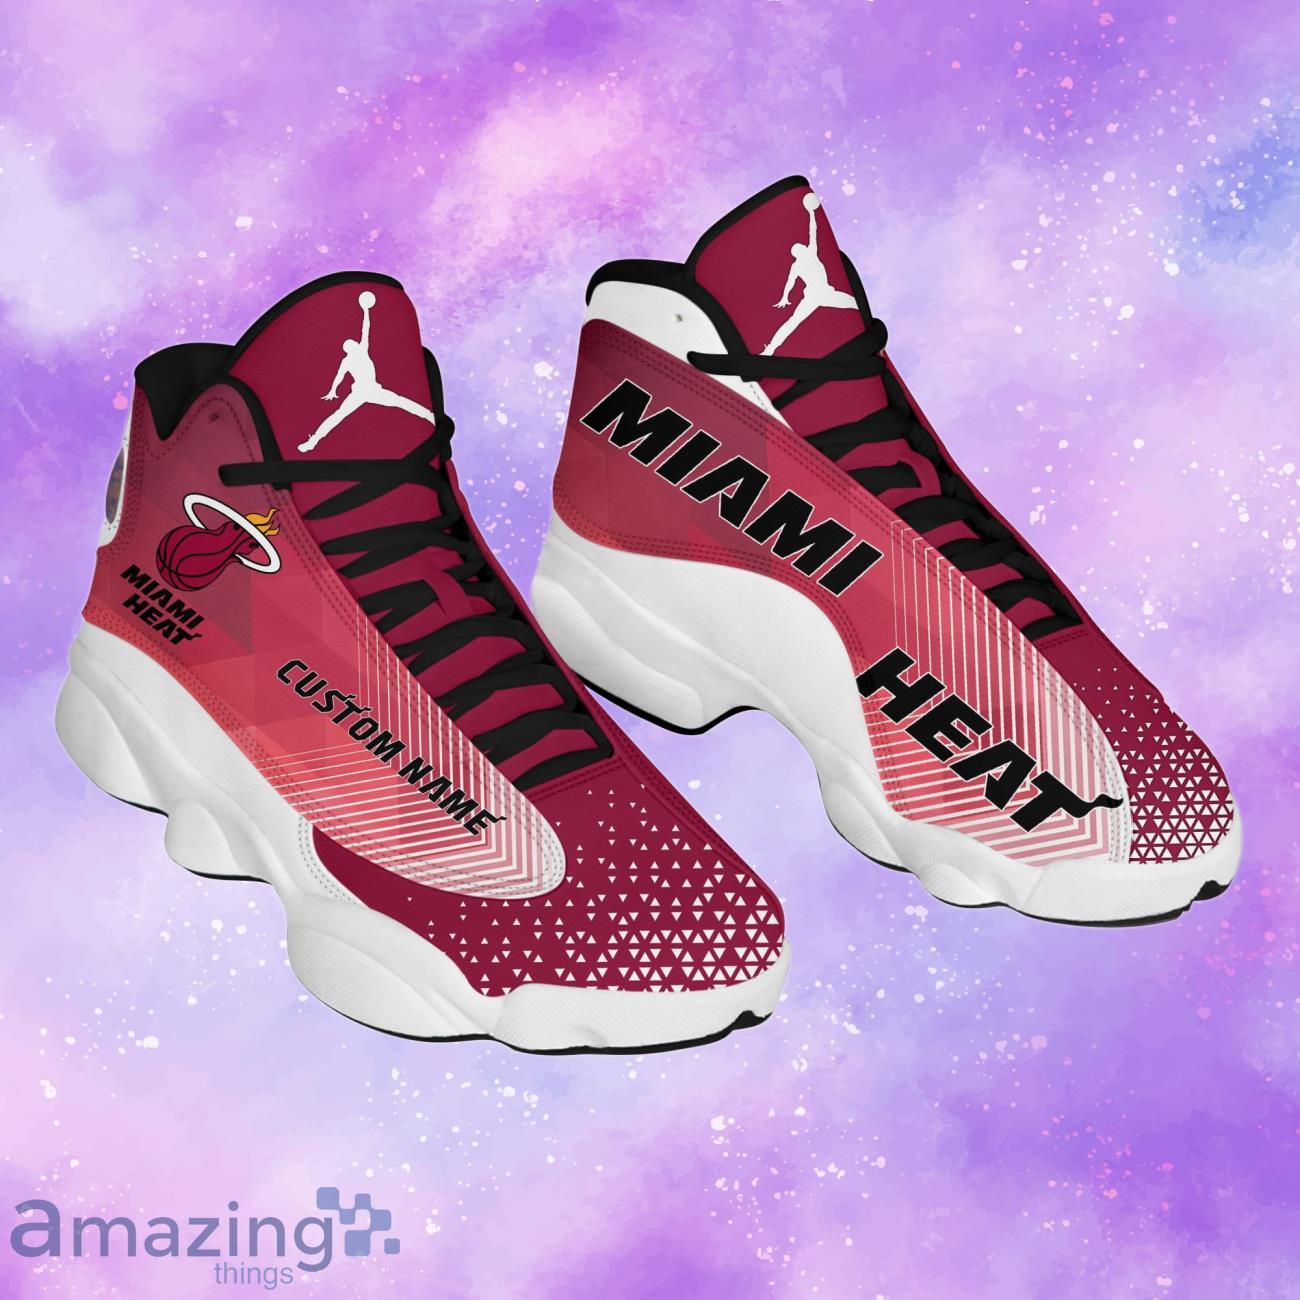 NBA Miami Heat Air Jordan 13 Arrow Custom Name Shoes